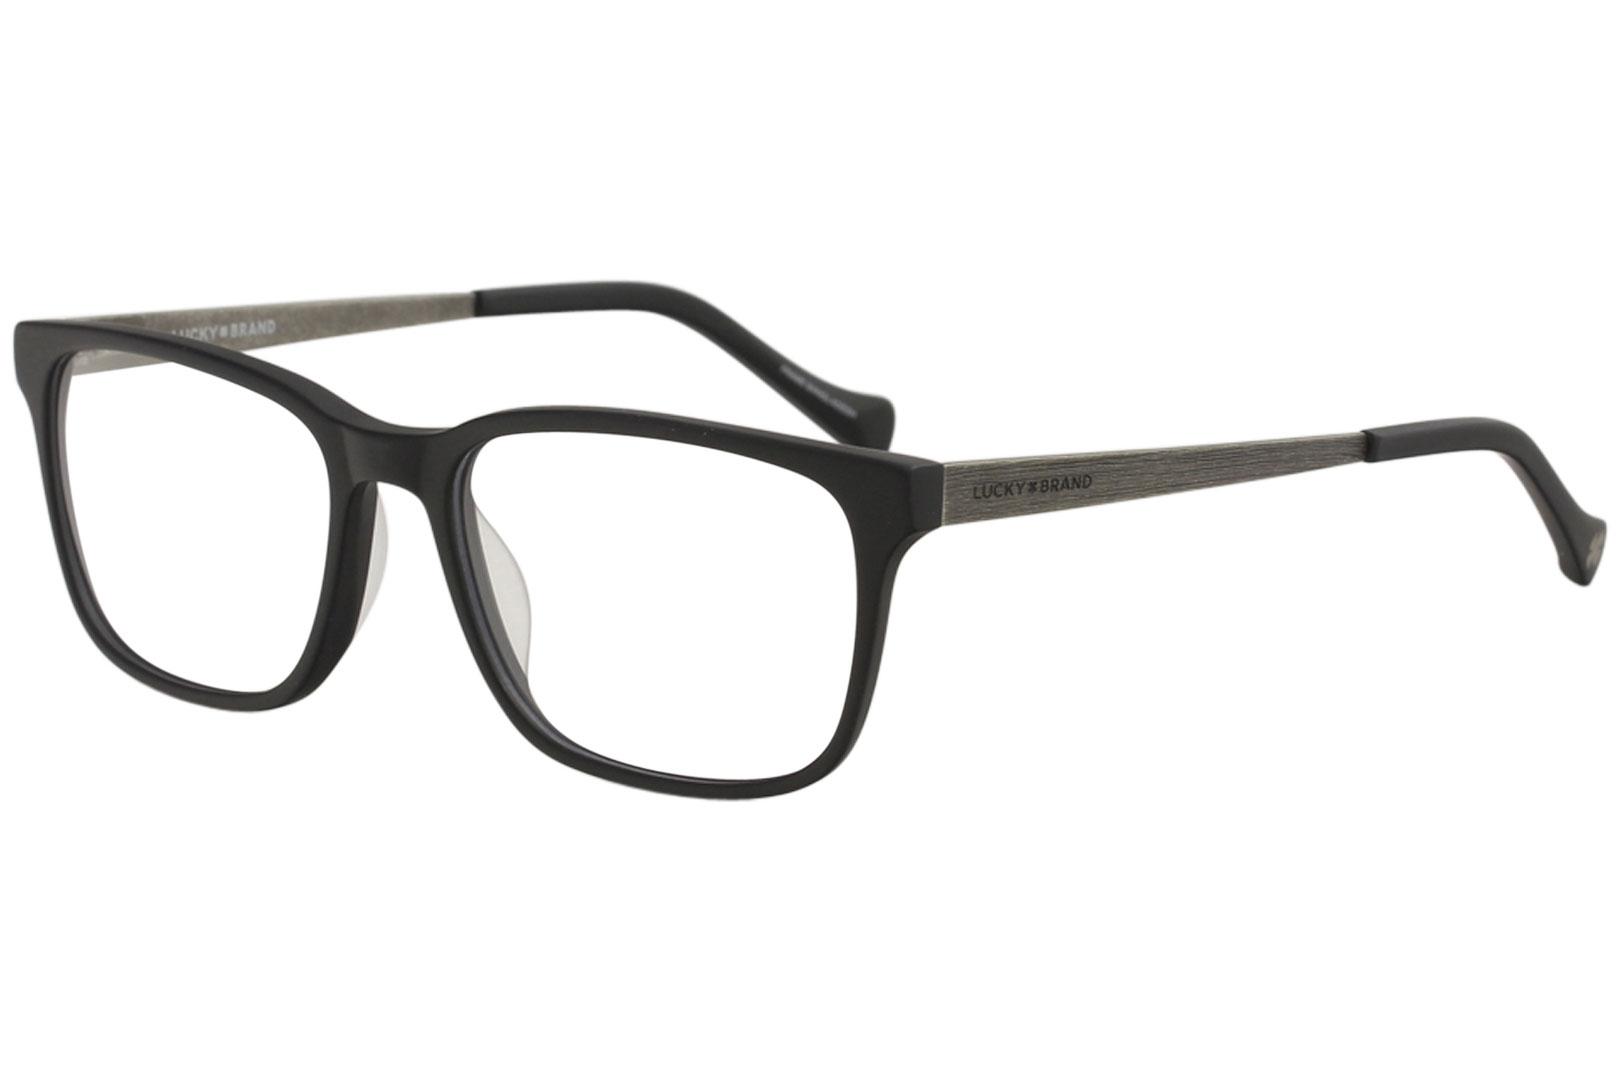 Lucky Brand Men's Eyeglasses D404 D/404 Matte Black Full Rim Optical Frame 54mm - Matte Black - Lens 54 Bridge 17 Temple 140mm